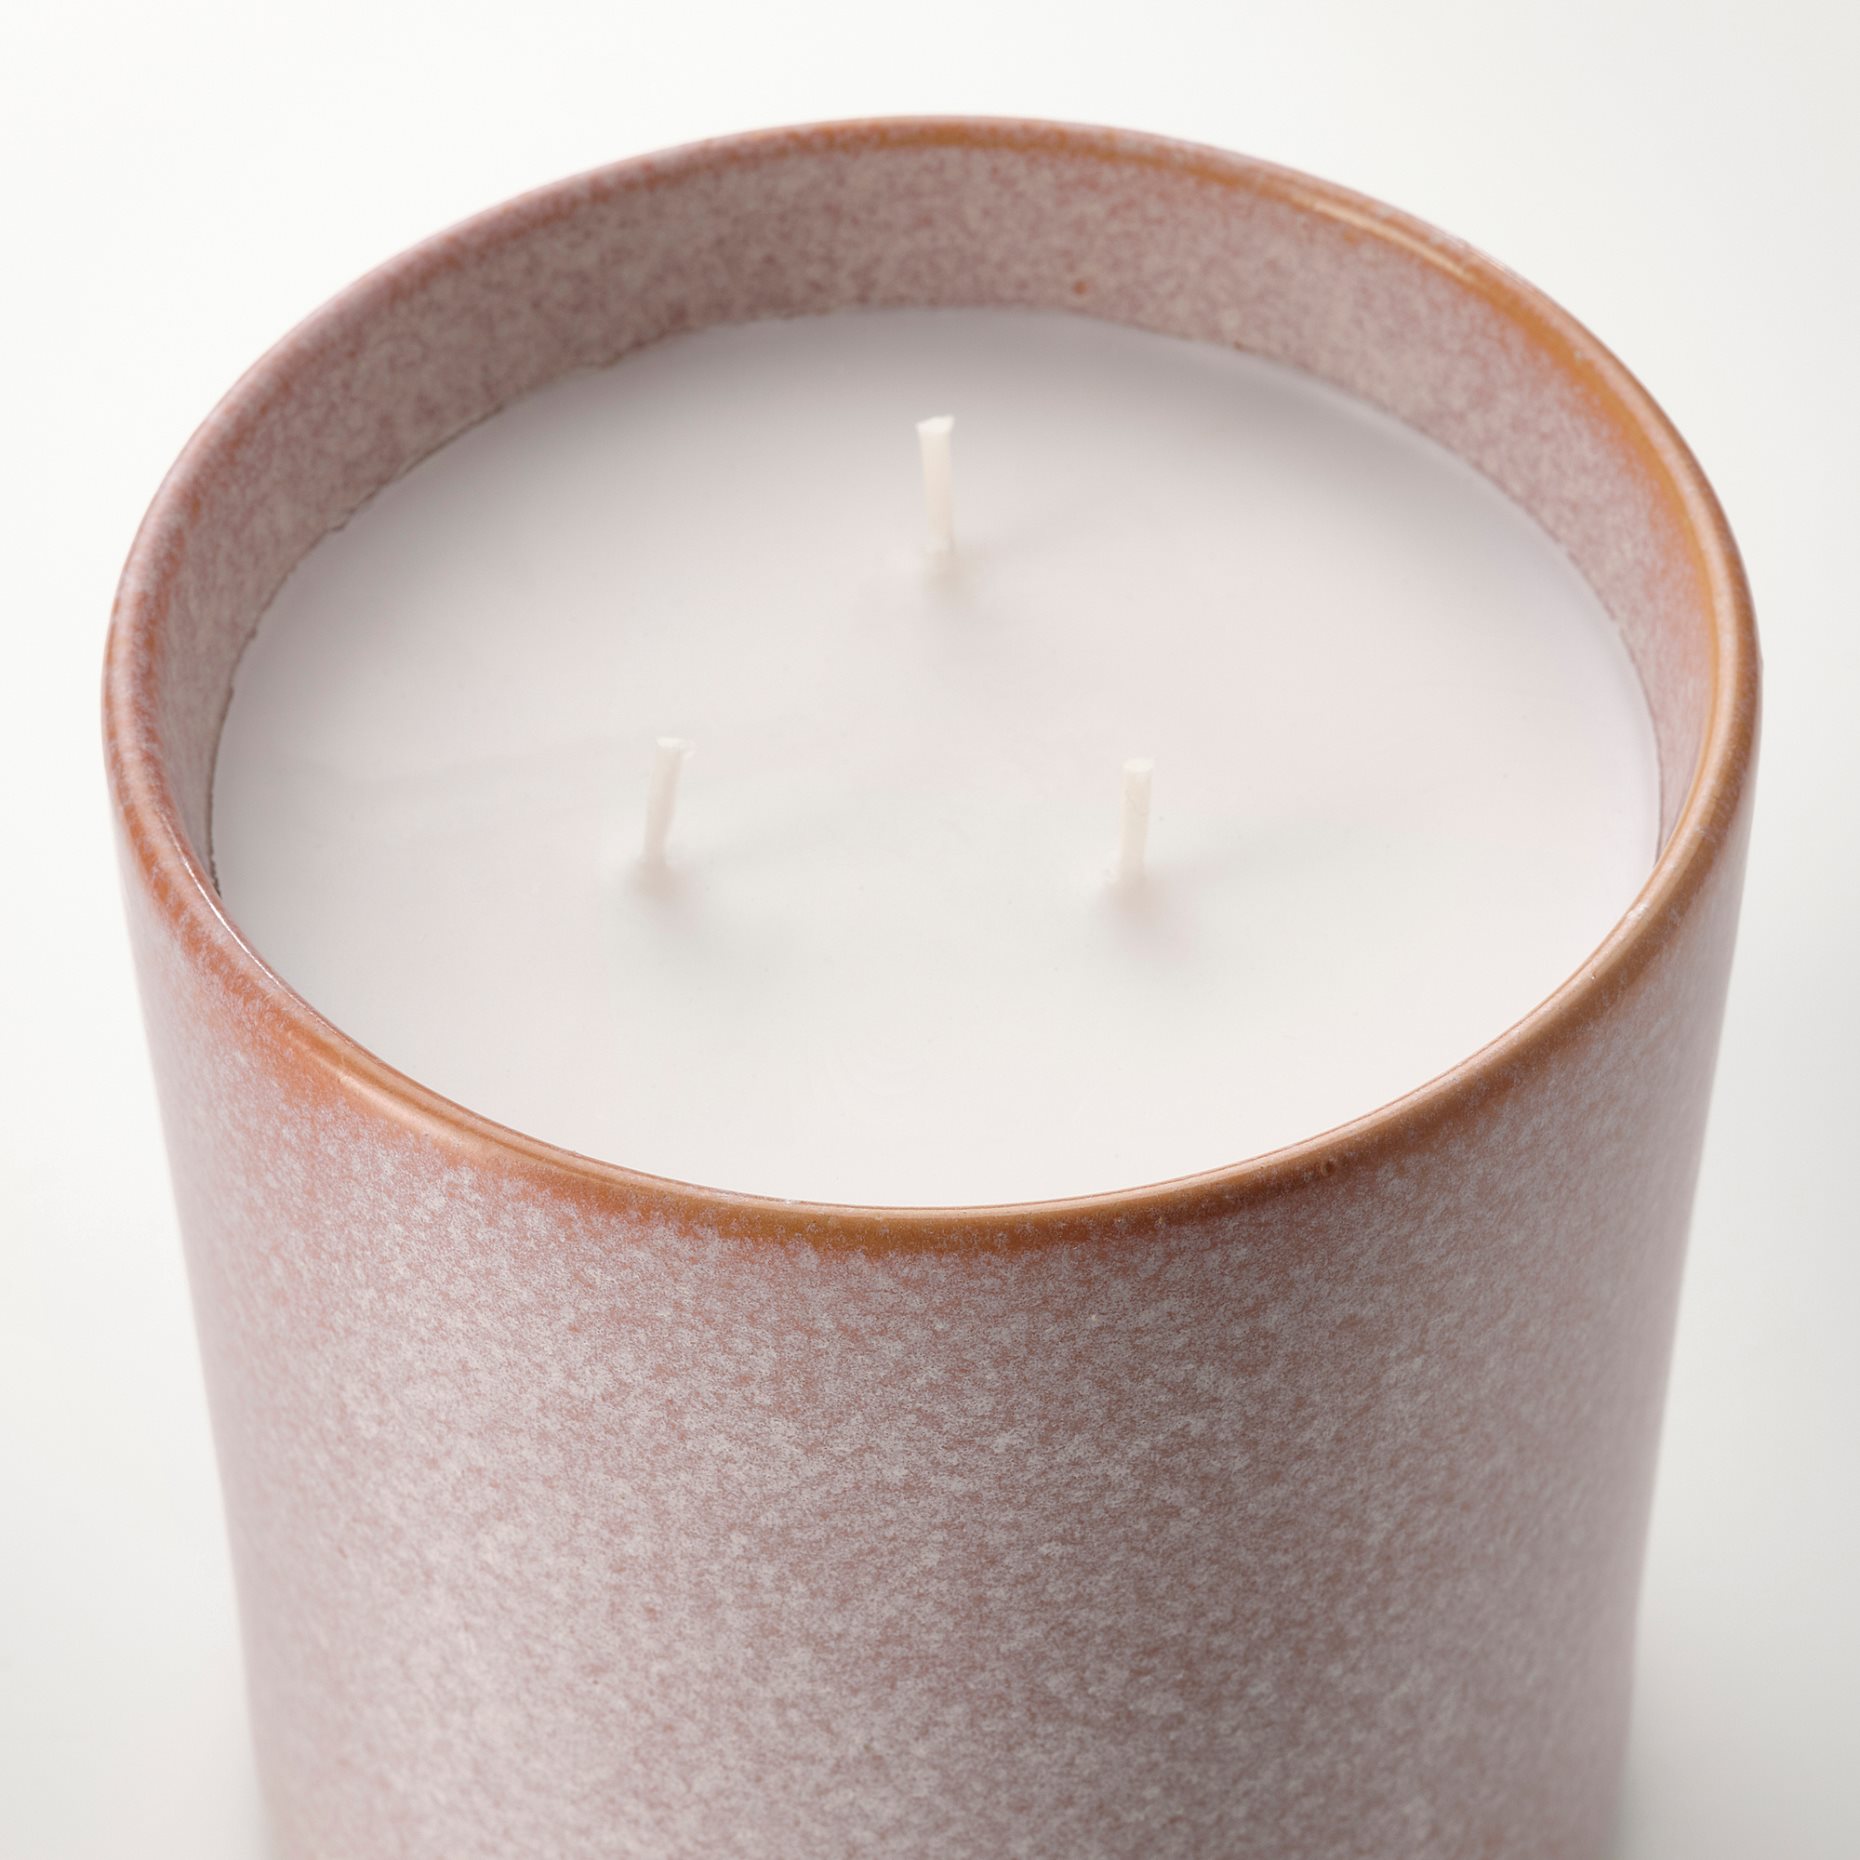 LUGNARE, αρωματικό κερί σε κεραμικό βάζο με καπάκι/Γιασεμί, 60 ώρες, 505.024.43